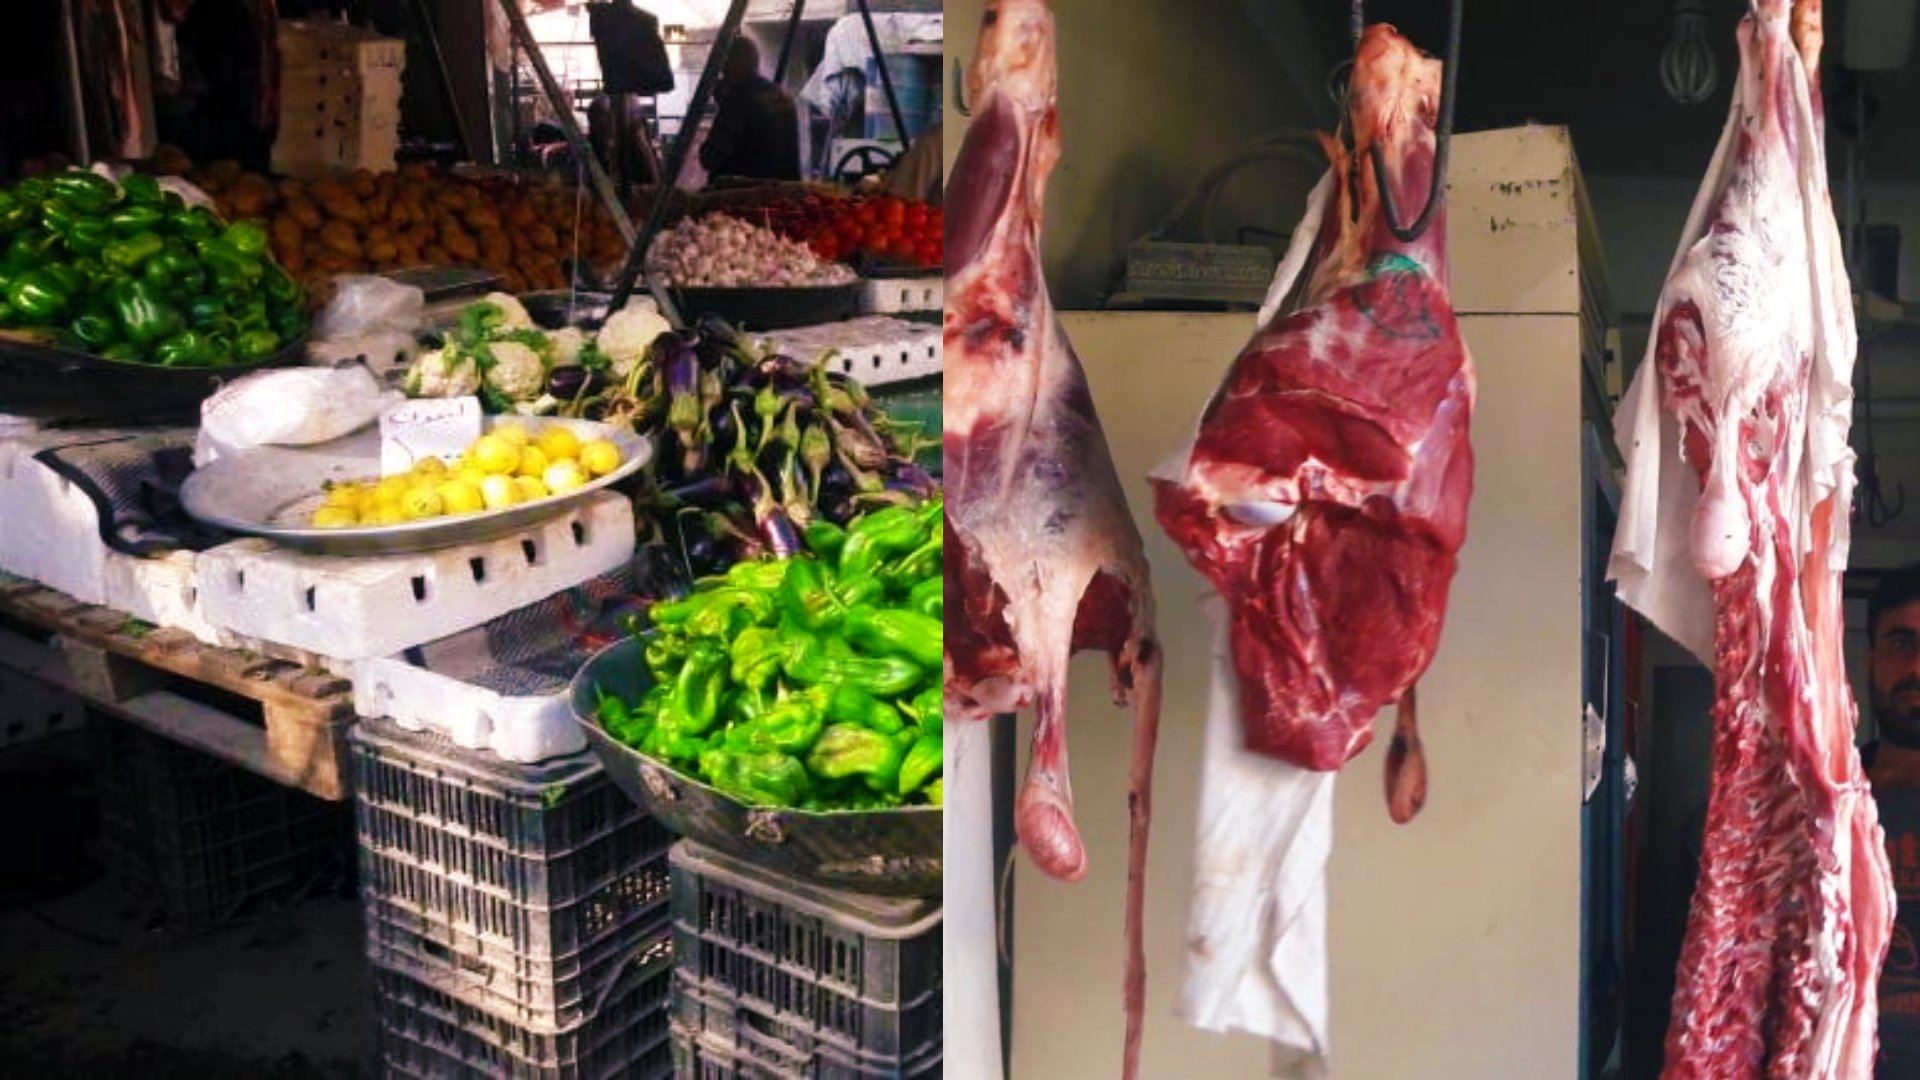 مديرية التجارة الداخلية بديرالزور تحدد أسعار اللحوم والخضار والفواكه